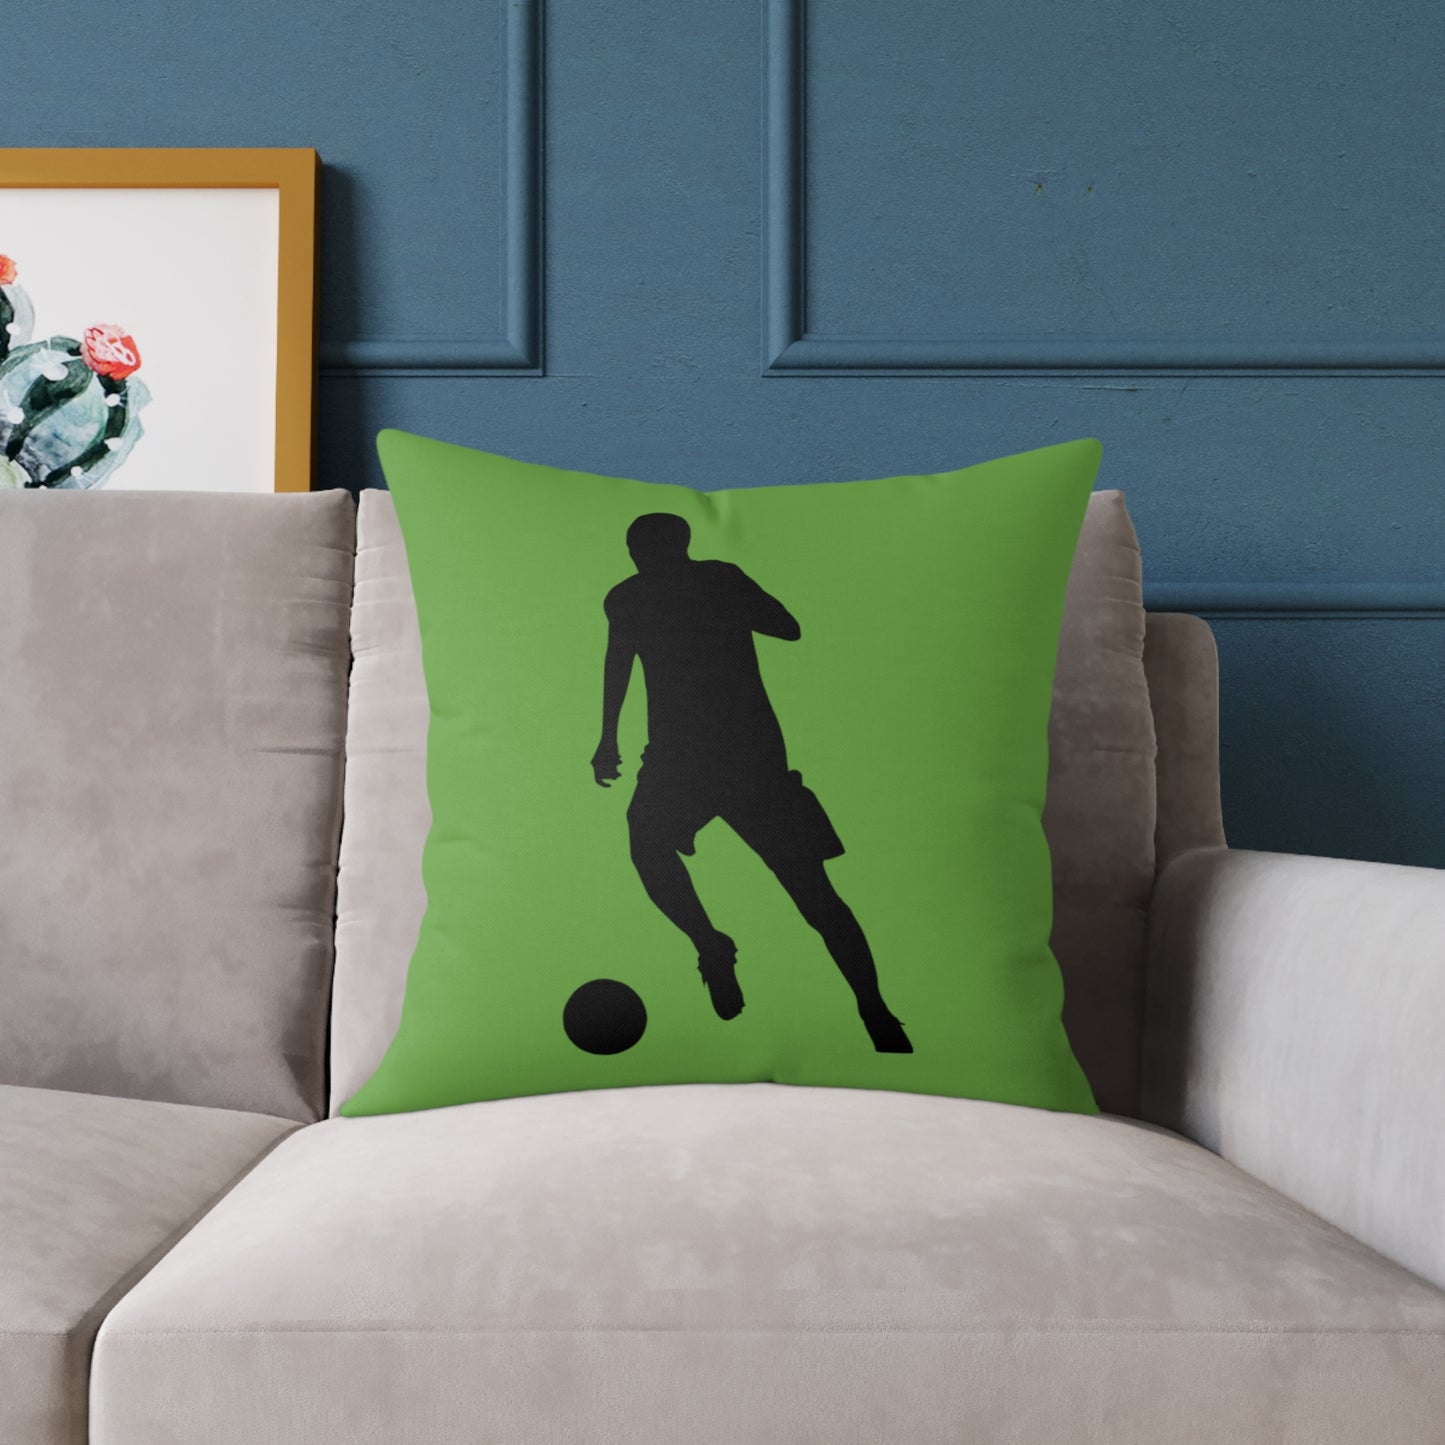 Spun Polyester Pillow: Soccer Green